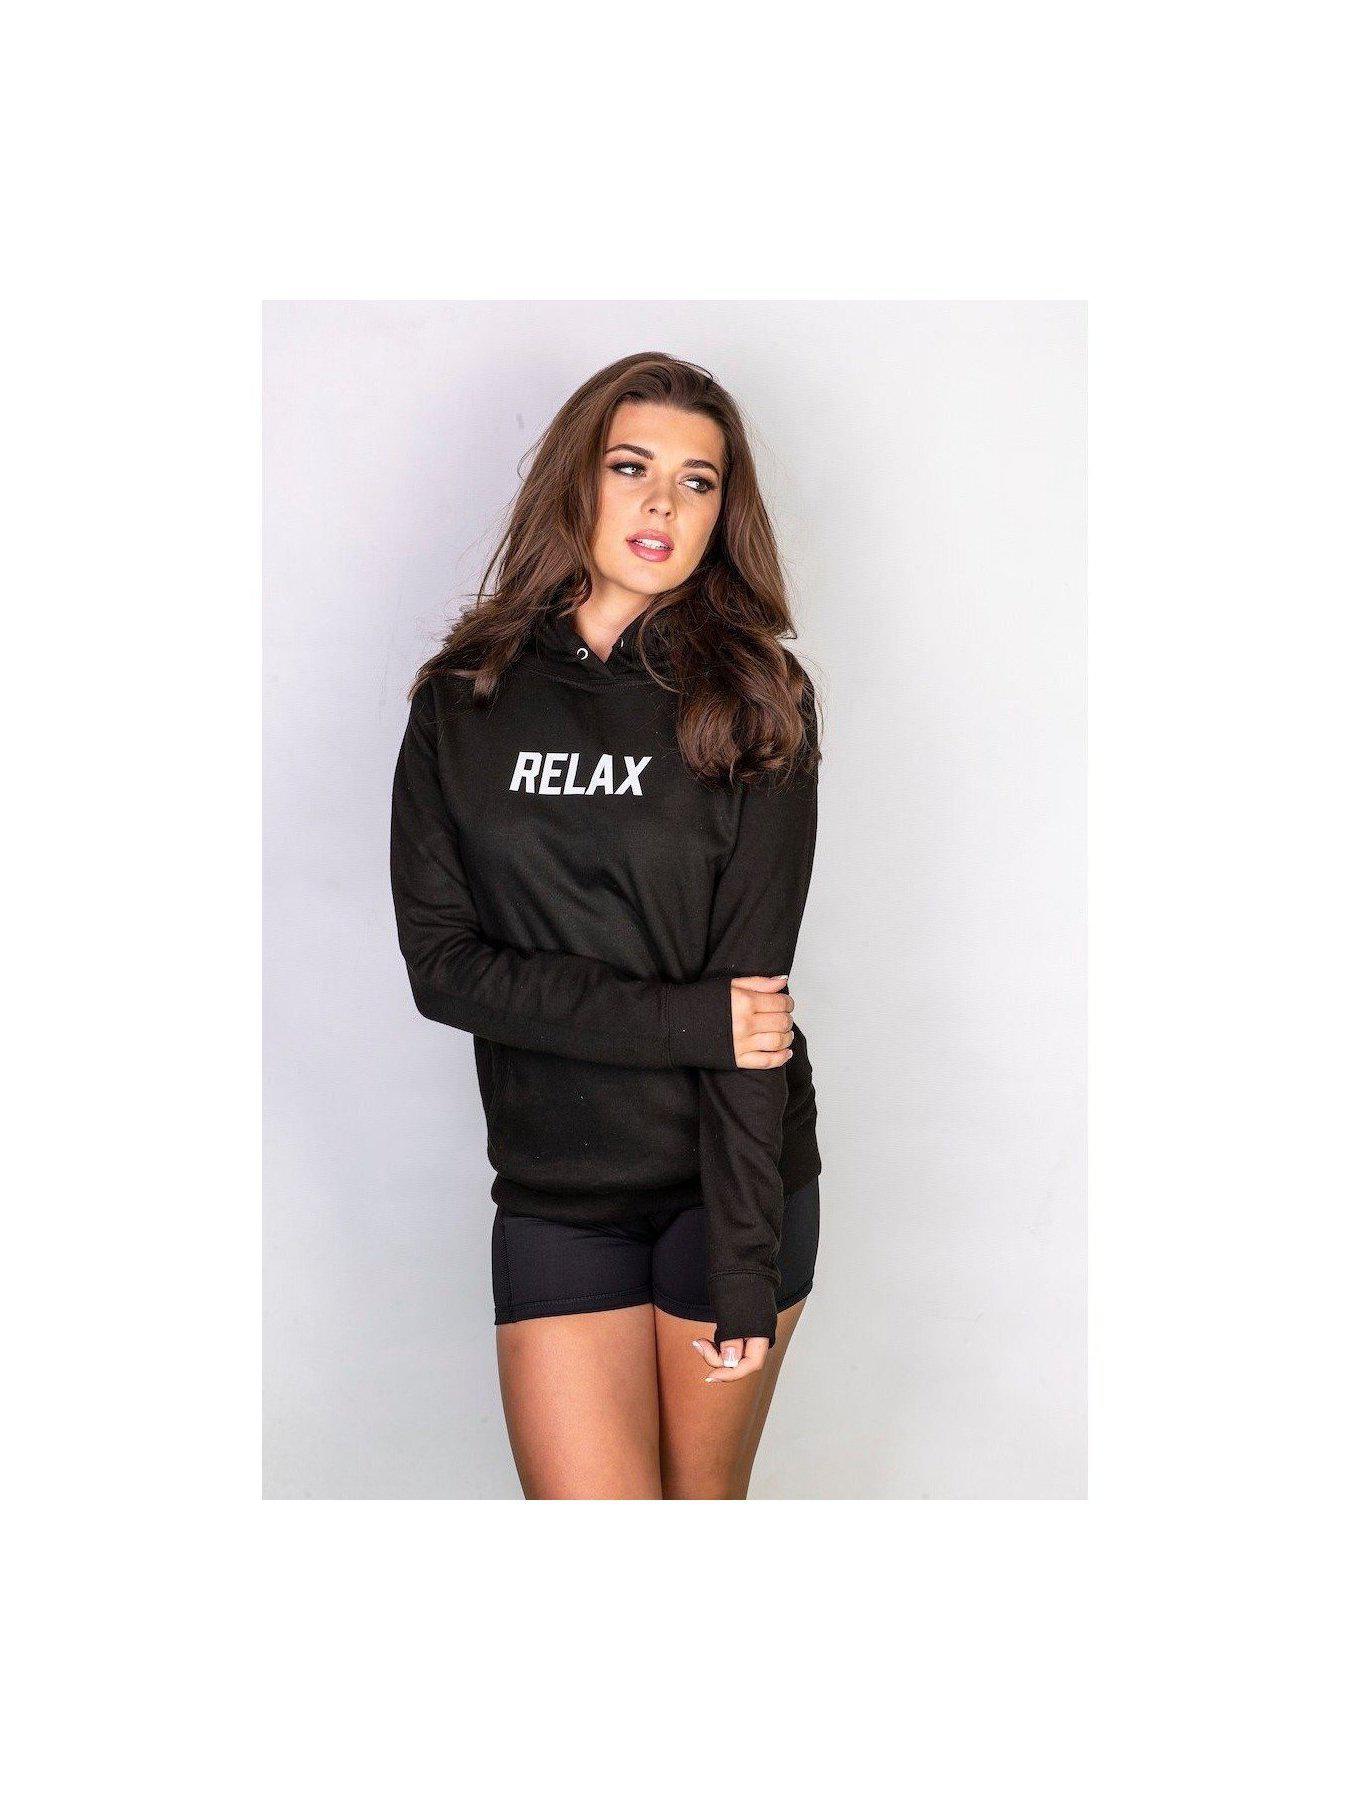 RELAX hoodie